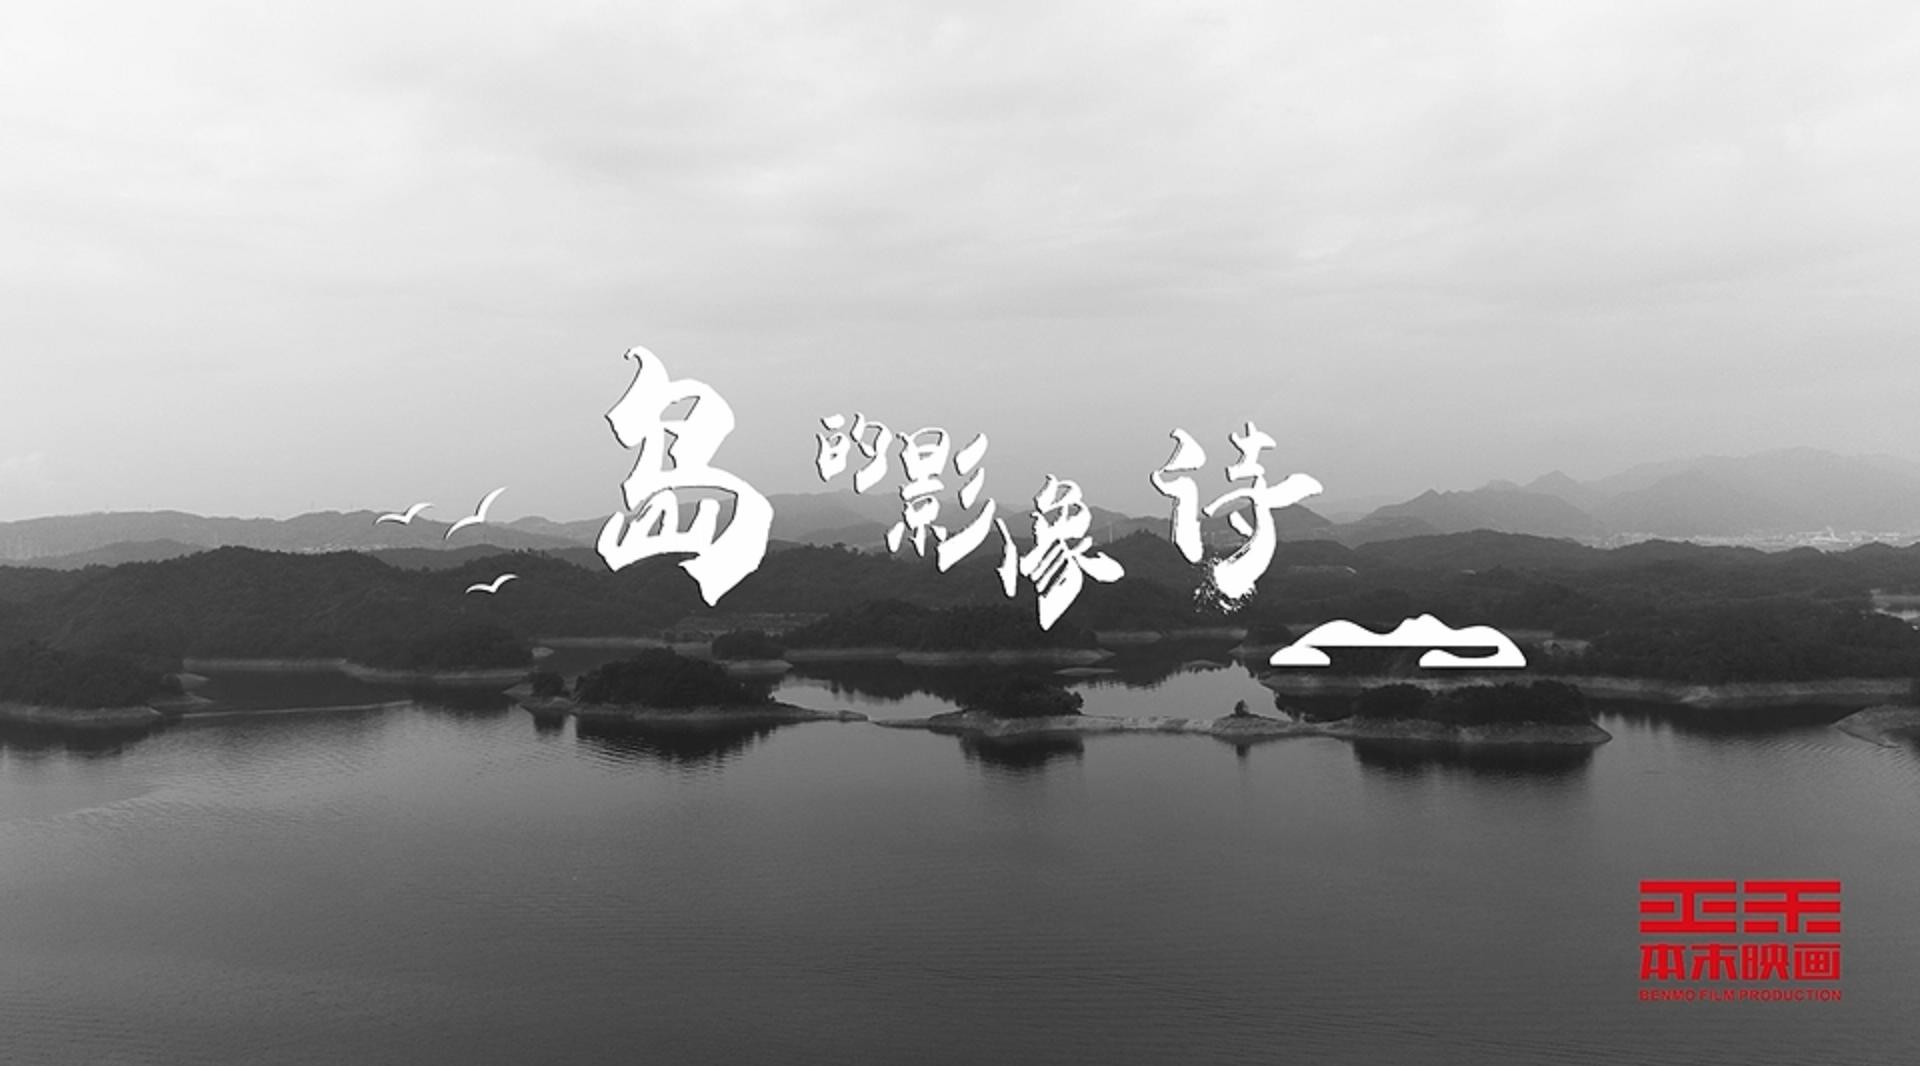 千岛湖旅游系列宣传片合集篇 